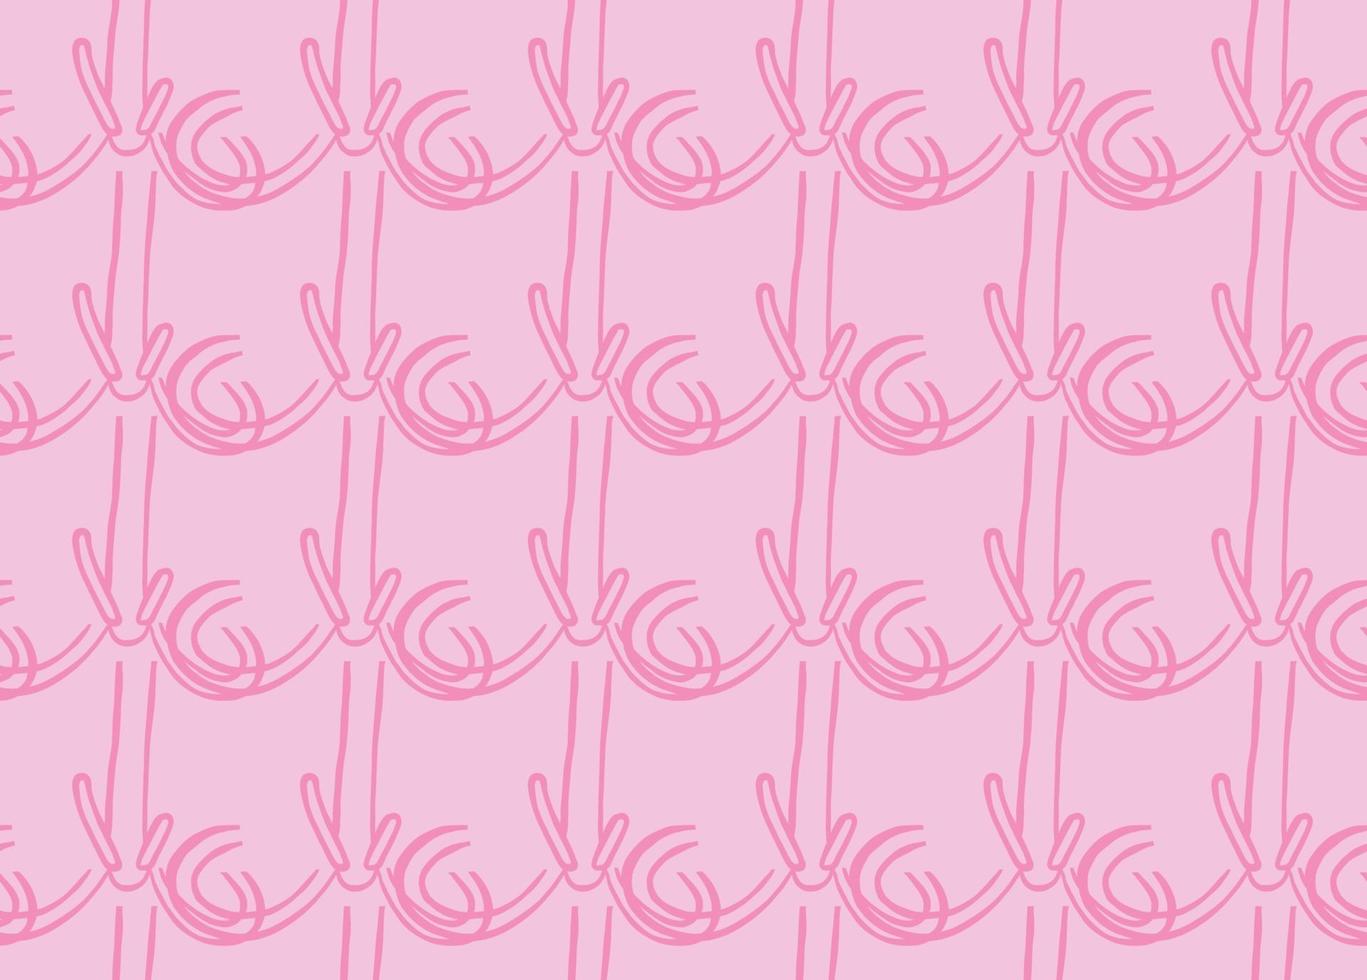 Fondo de textura de vector, patrón sin costuras. dibujados a mano, colores rosados. vector